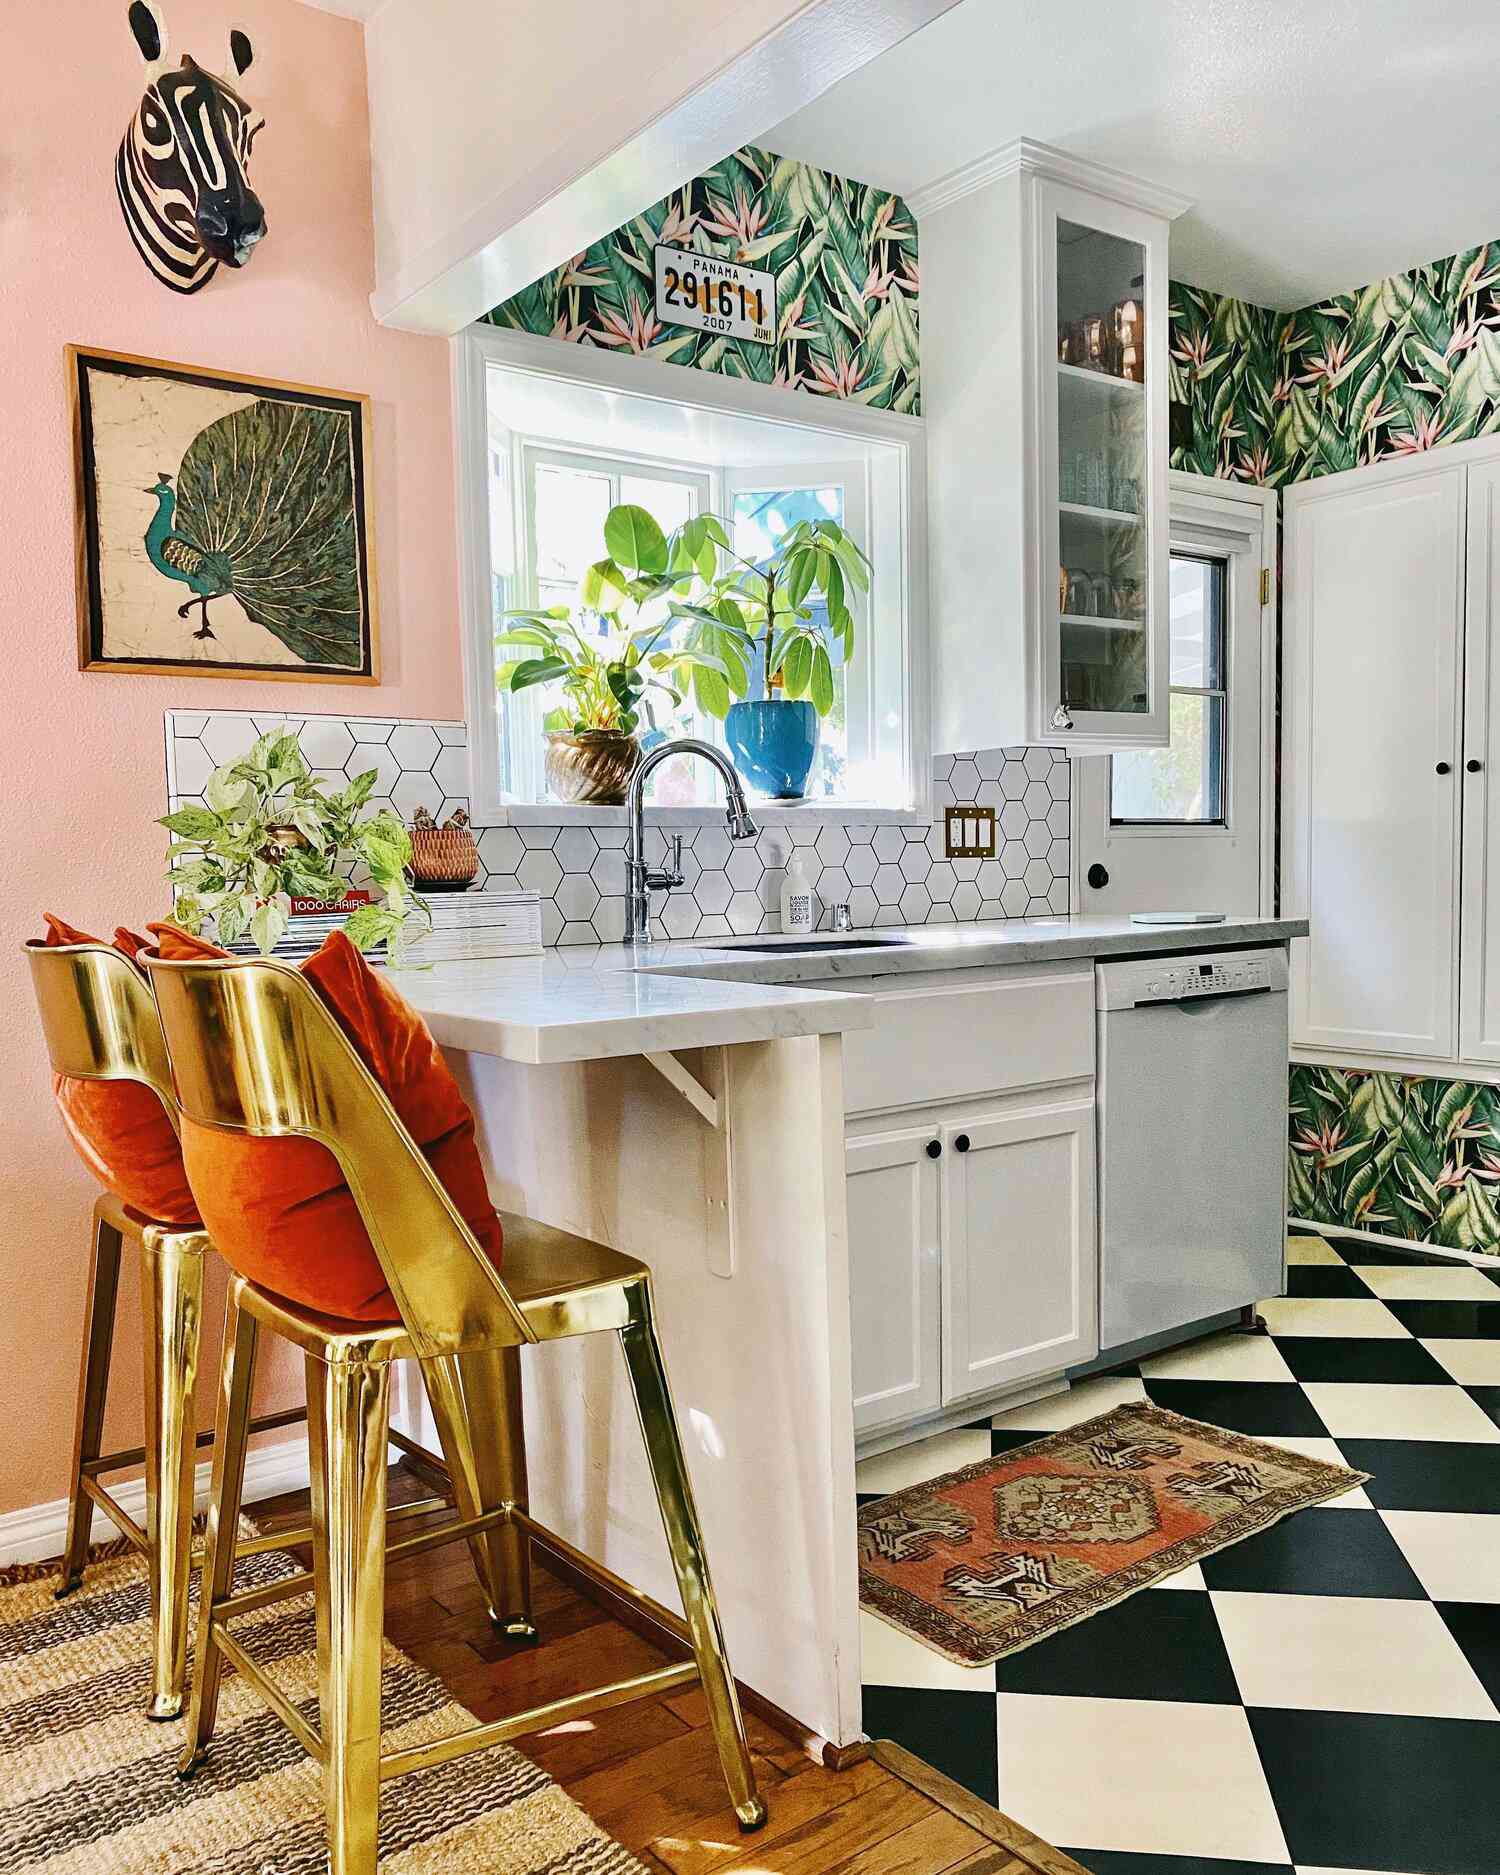 cozinha pequena eclética com papel de parede com padrão de folhas, backsplash de azulejos hexagonais, piso quadriculado preto e branco.